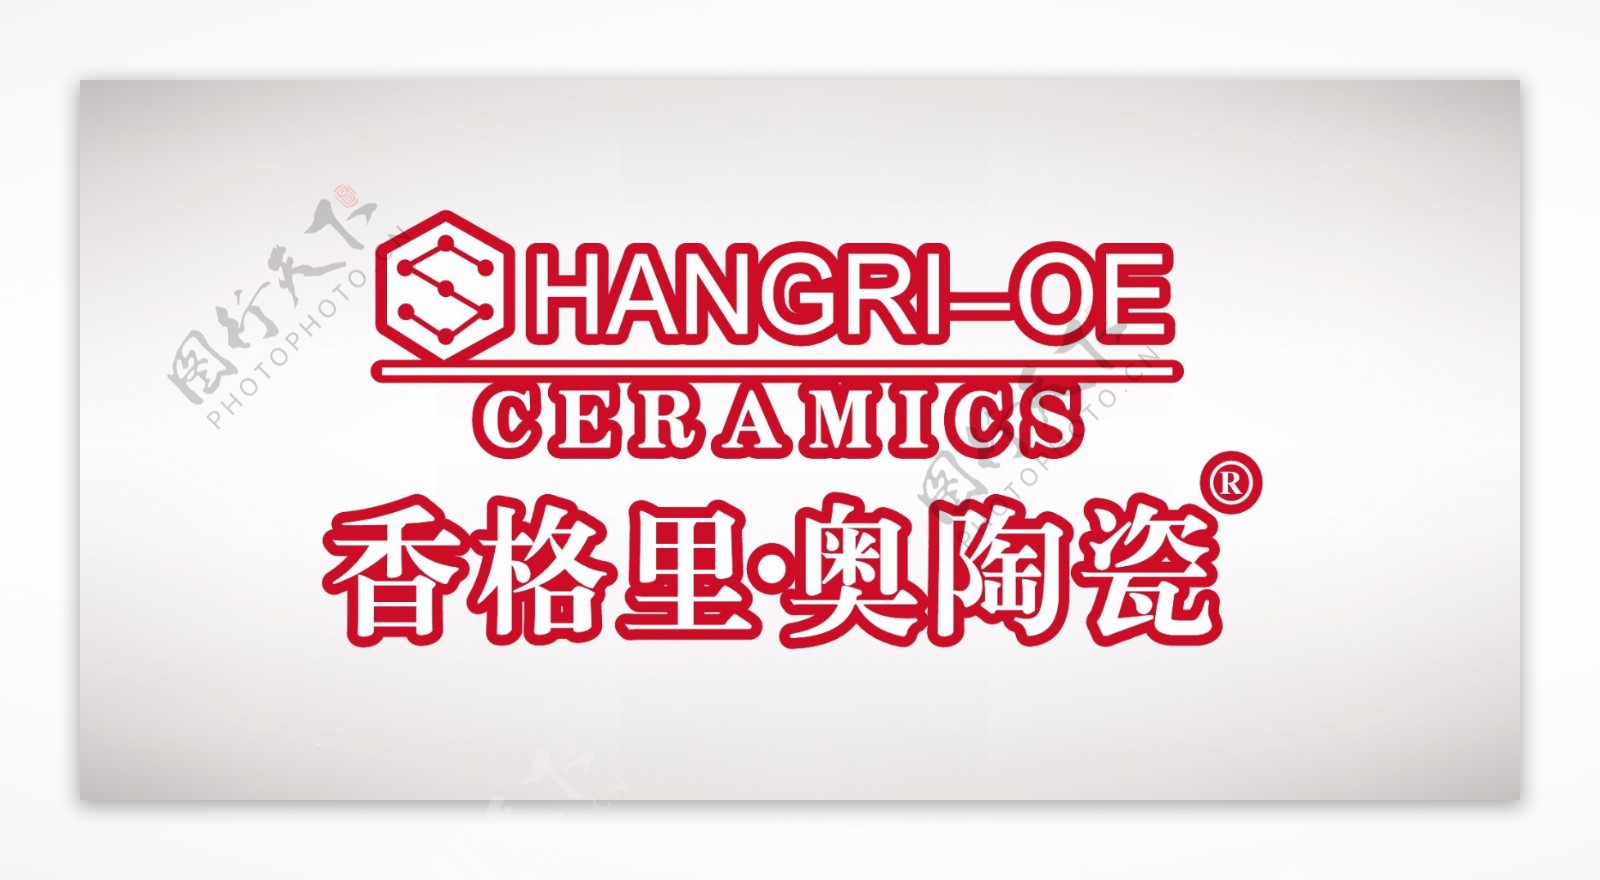 香格里奥陶瓷logo